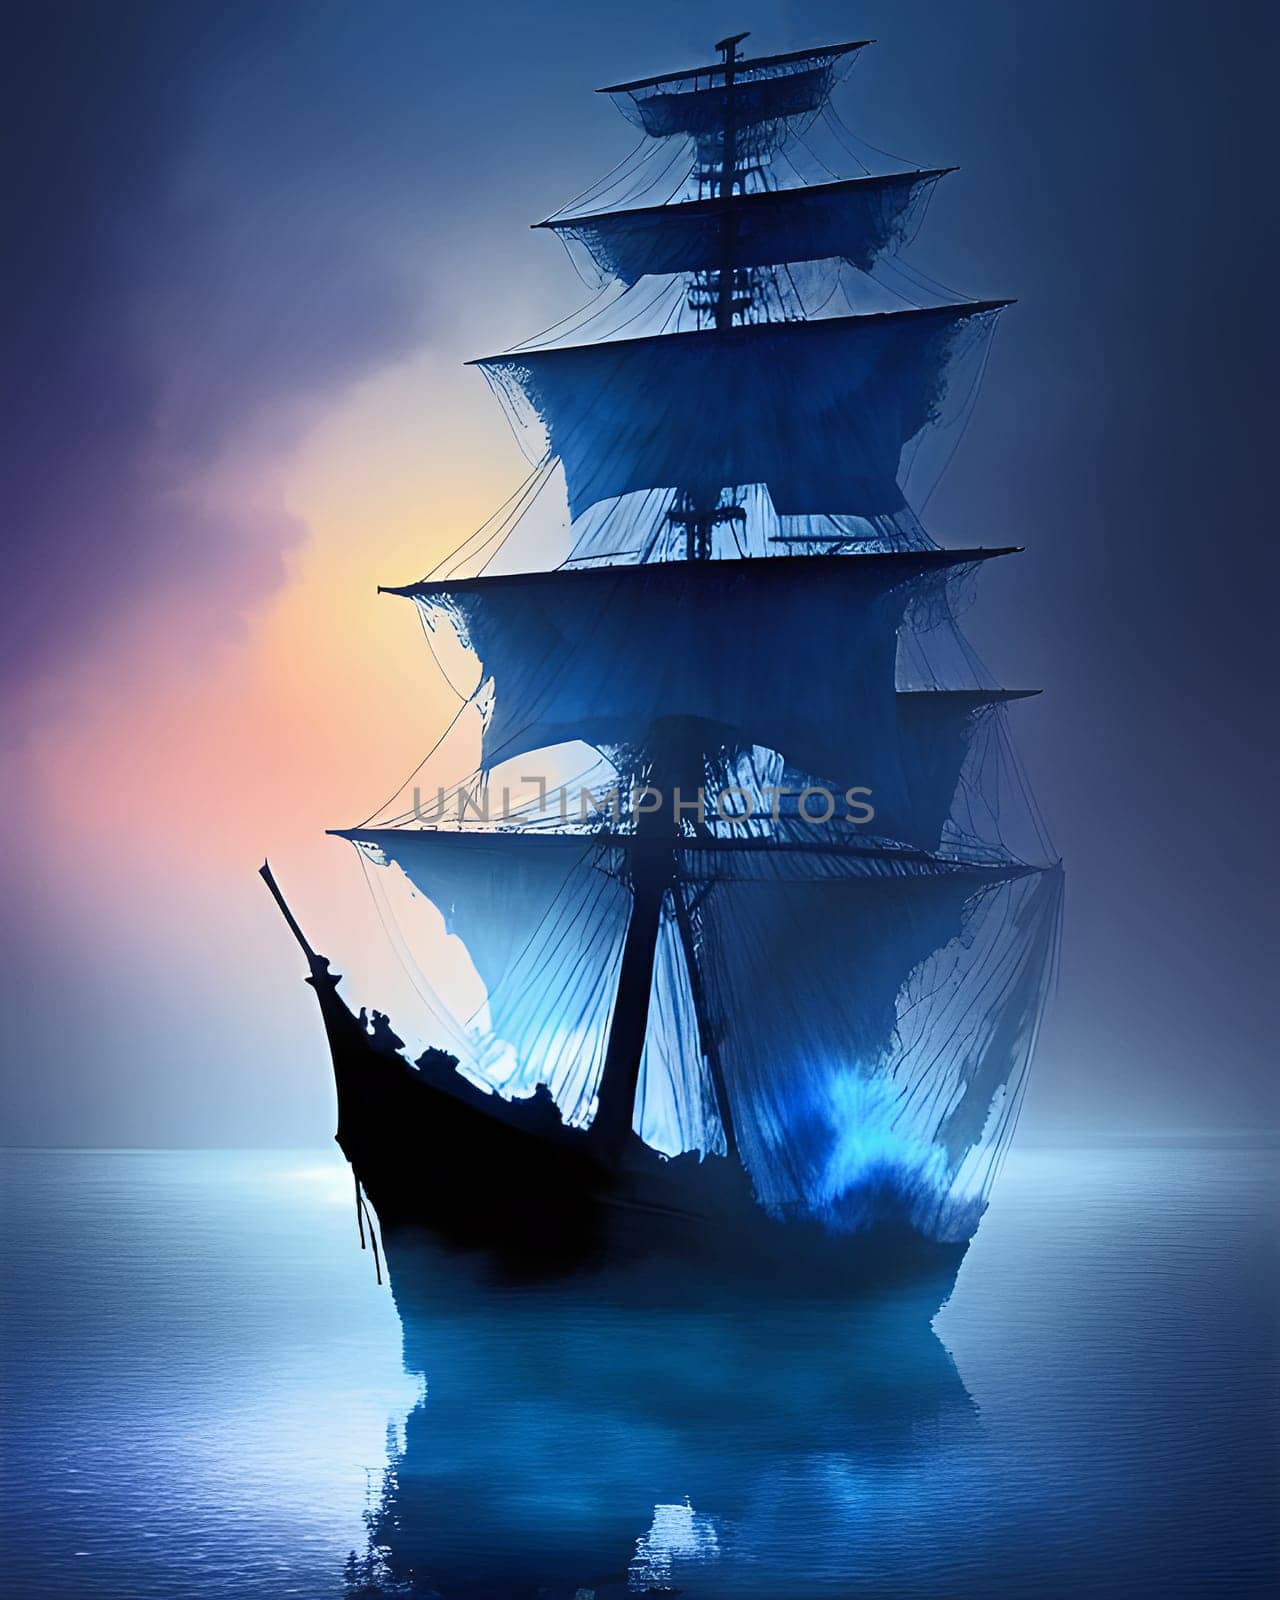 Ghost ship by WielandTeixeira